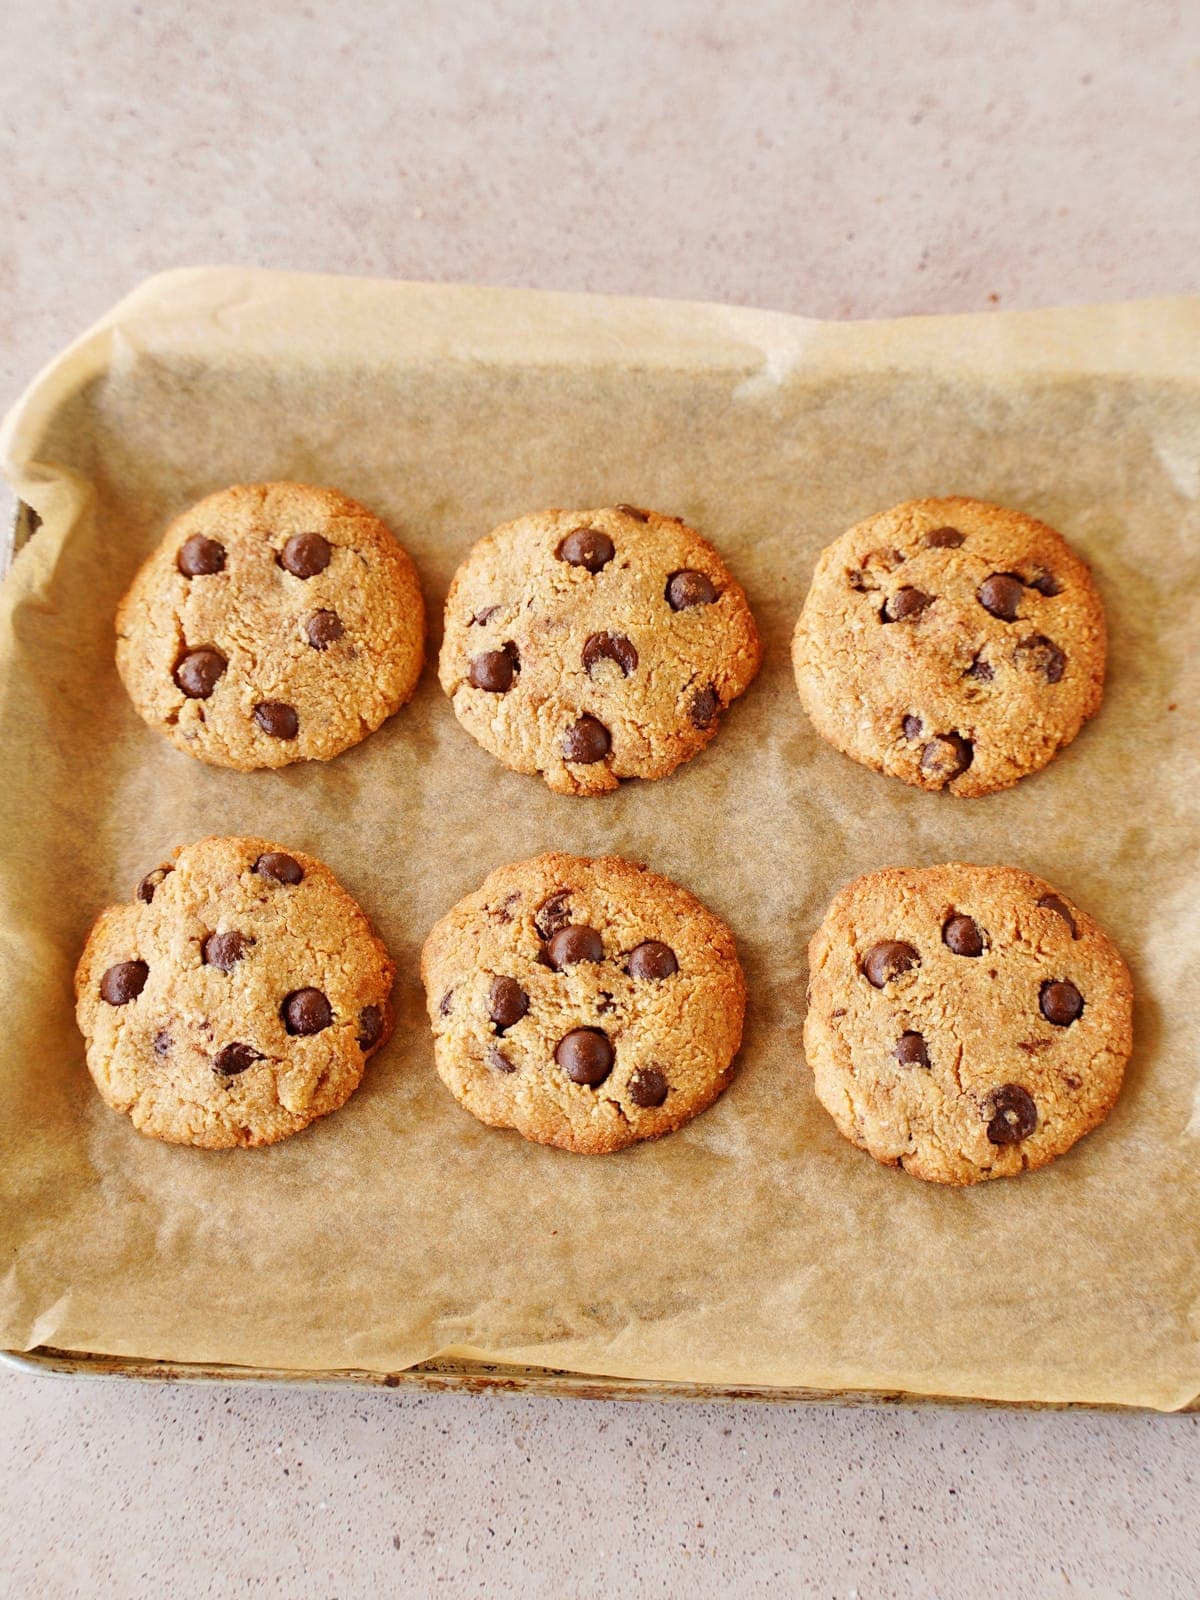 6 gesunde Chocolate Chip Cookies aus Mandeln nach dem Backen auf einem Backblech